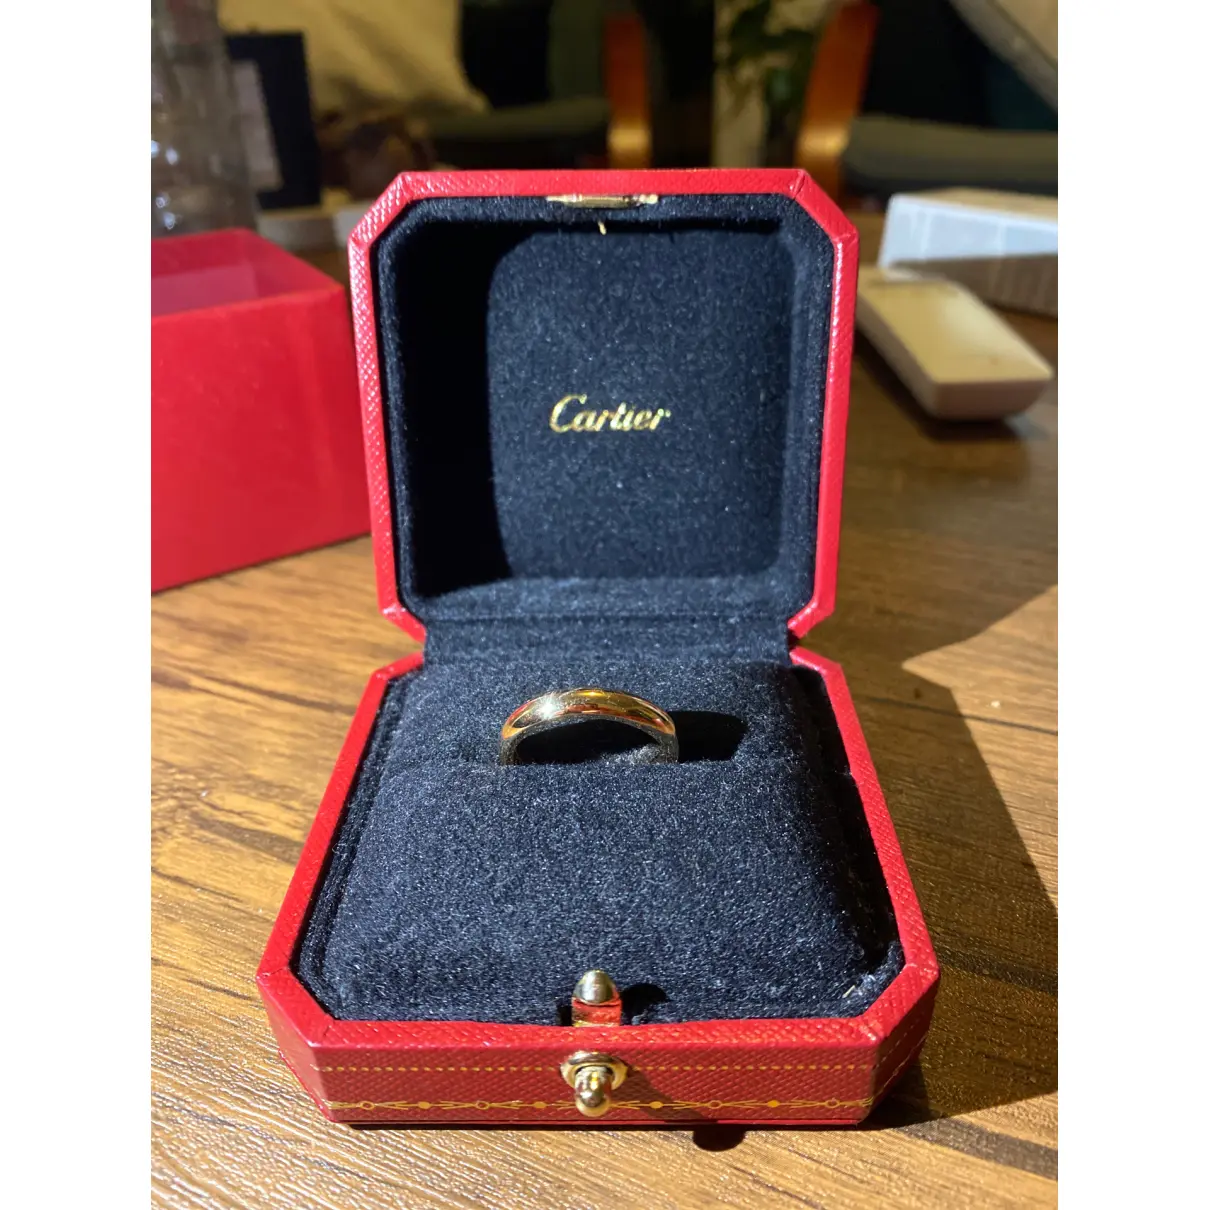 Buy Cartier 1895 yellow gold jewellery online